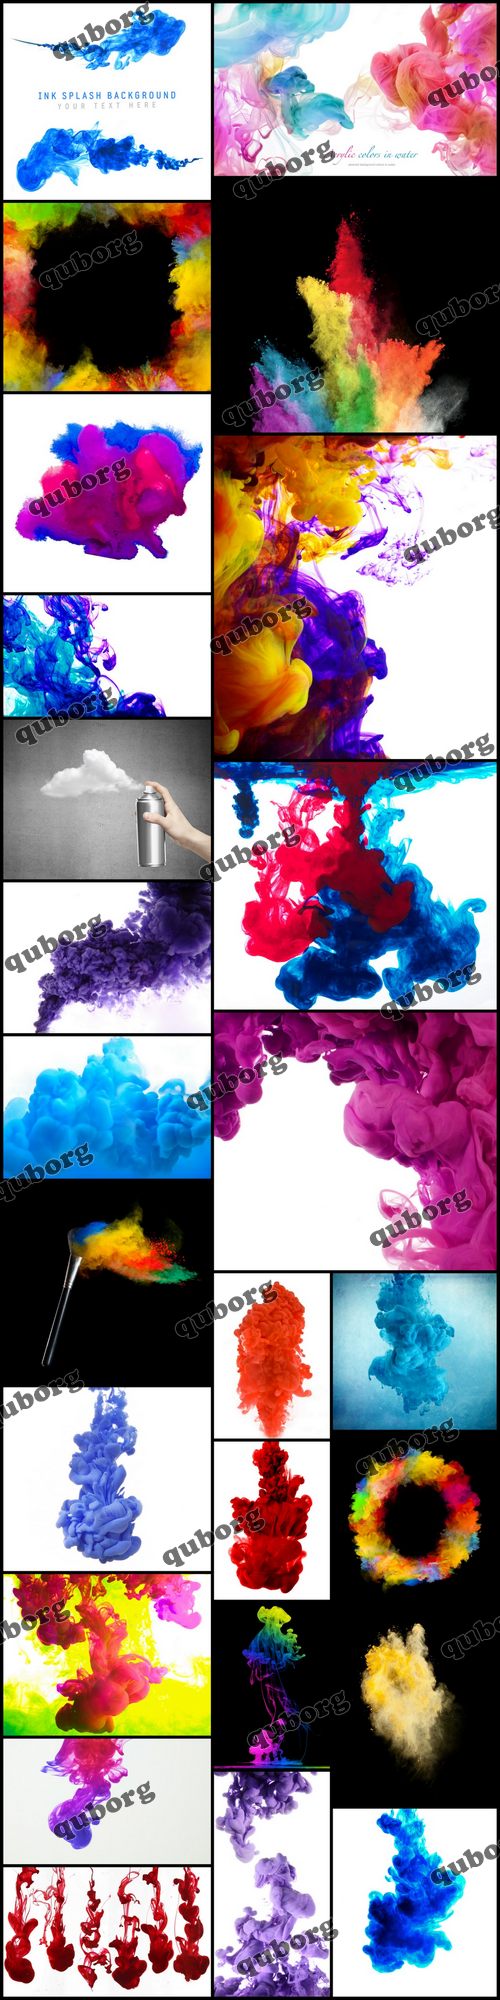 Stock Photos - Cloud Paint